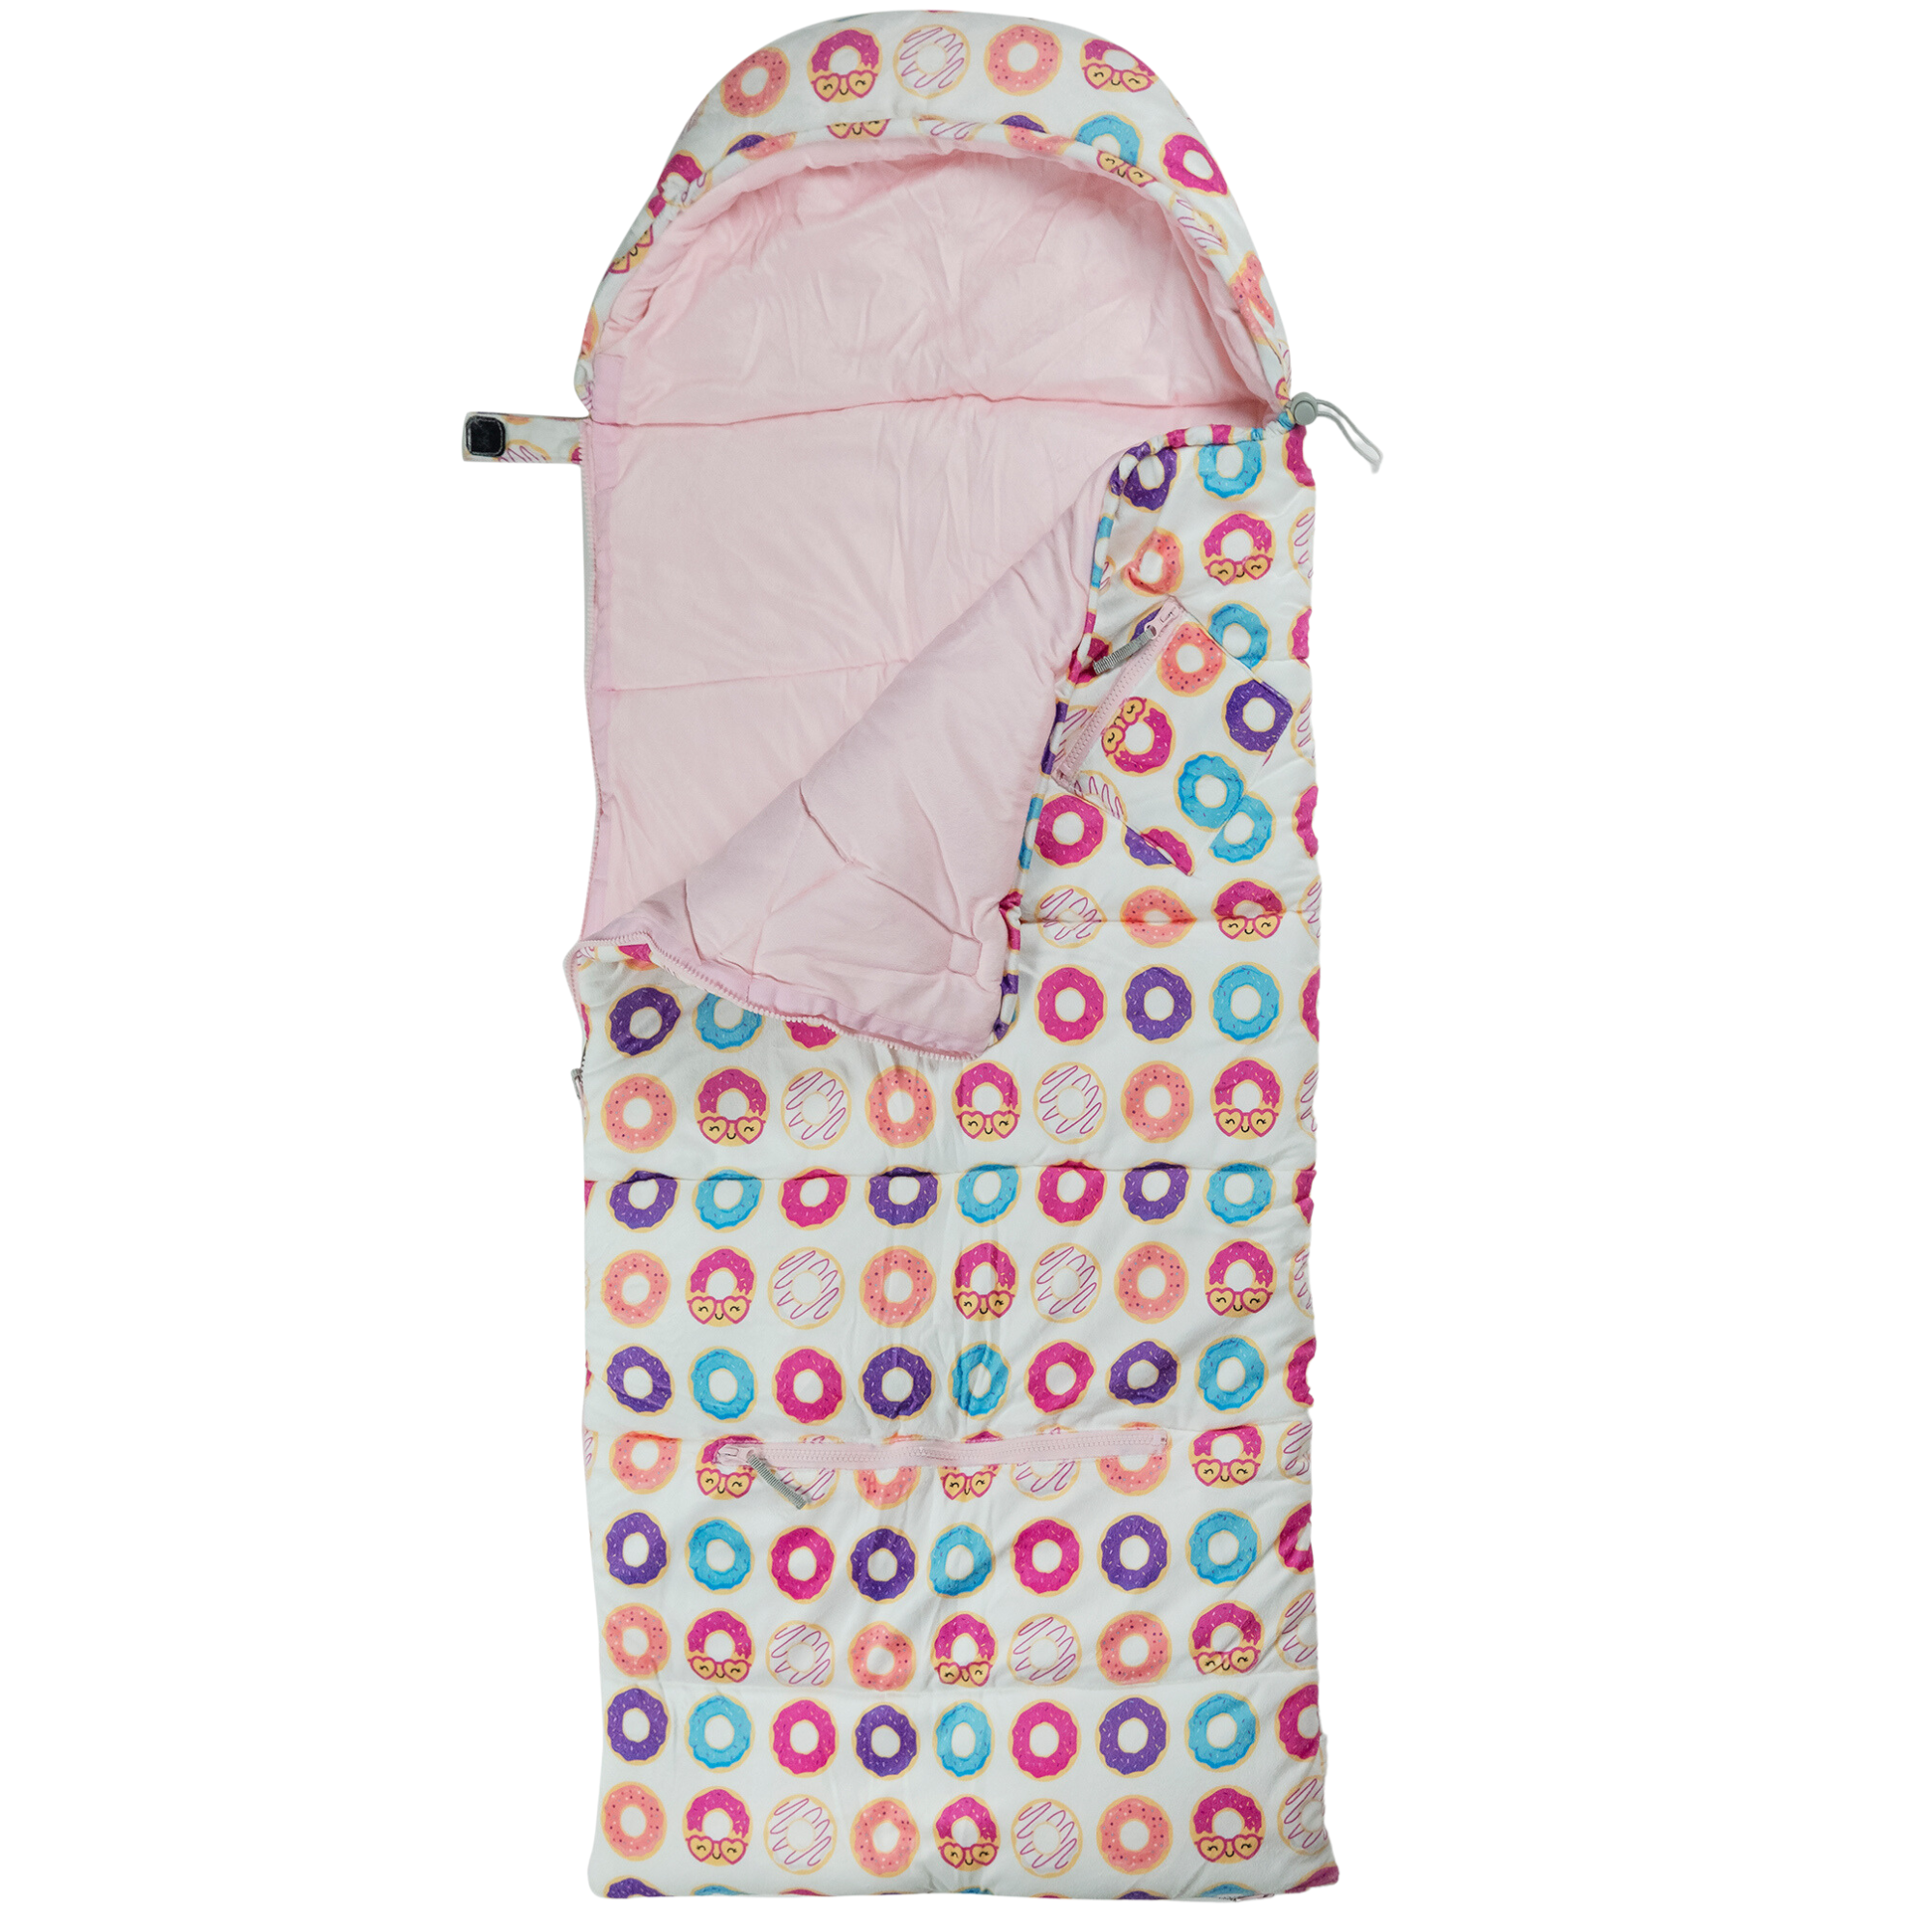 Sleep-n-Pack: Packable Little Kid's Sleeping Bag & Backpack, Cozy Mink –  mimish, inc.